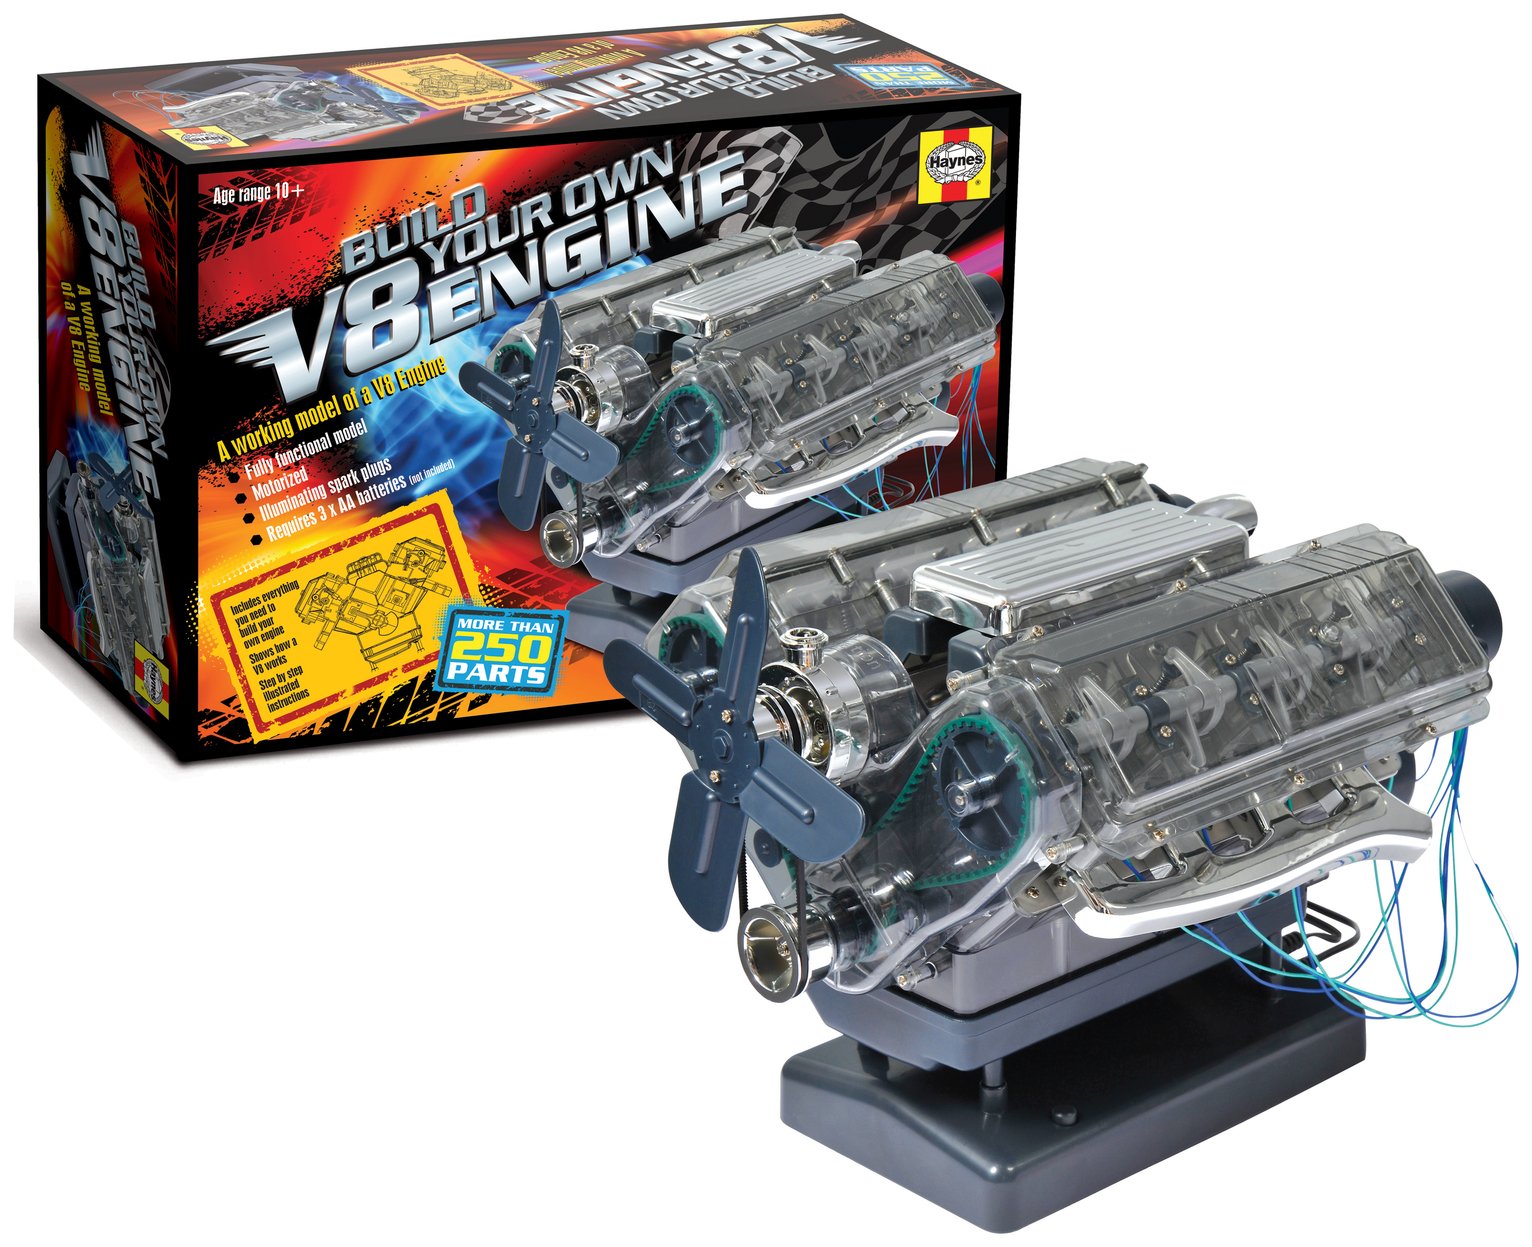 Haynes Build Your Own V8 Engine